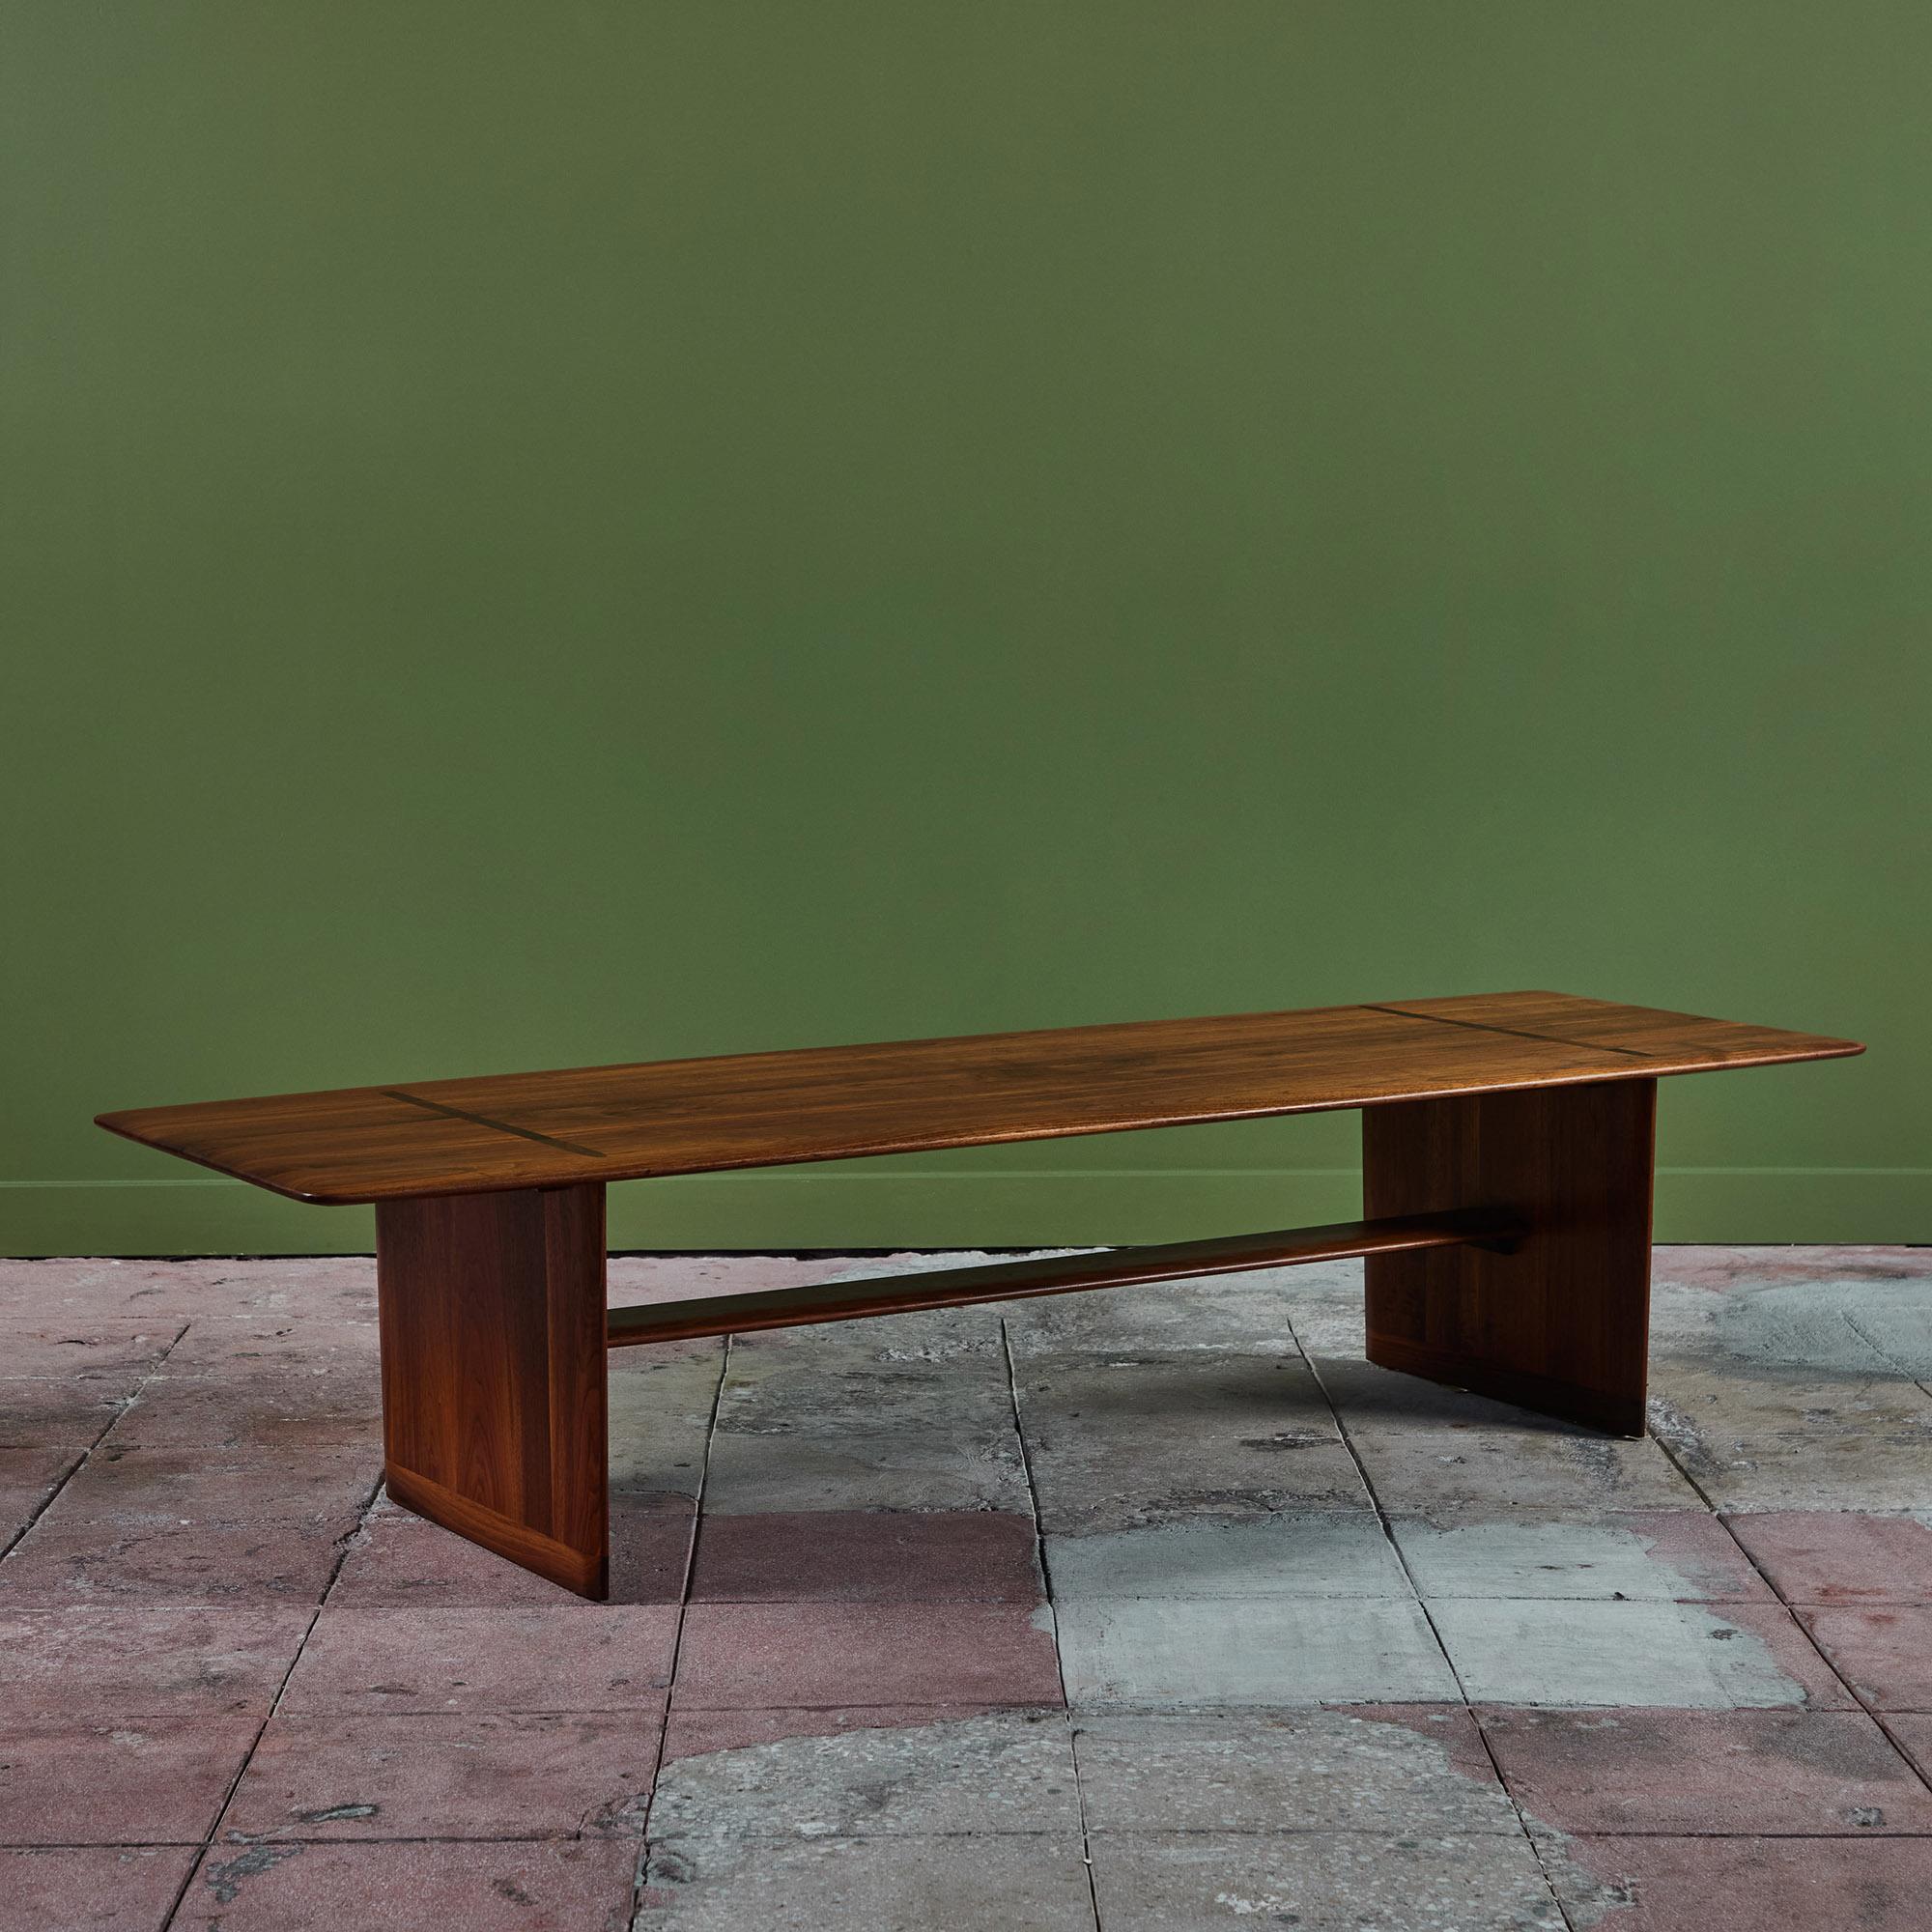 Table basse rectangulaire Brown Saltman, c.1950s, USA. La table est dotée d'un plateau en noyer à bords tranchants et d'une magnifique menuiserie apparente à l'endroit où les pieds rejoignent le plateau. Les jambes sont reliées par un long